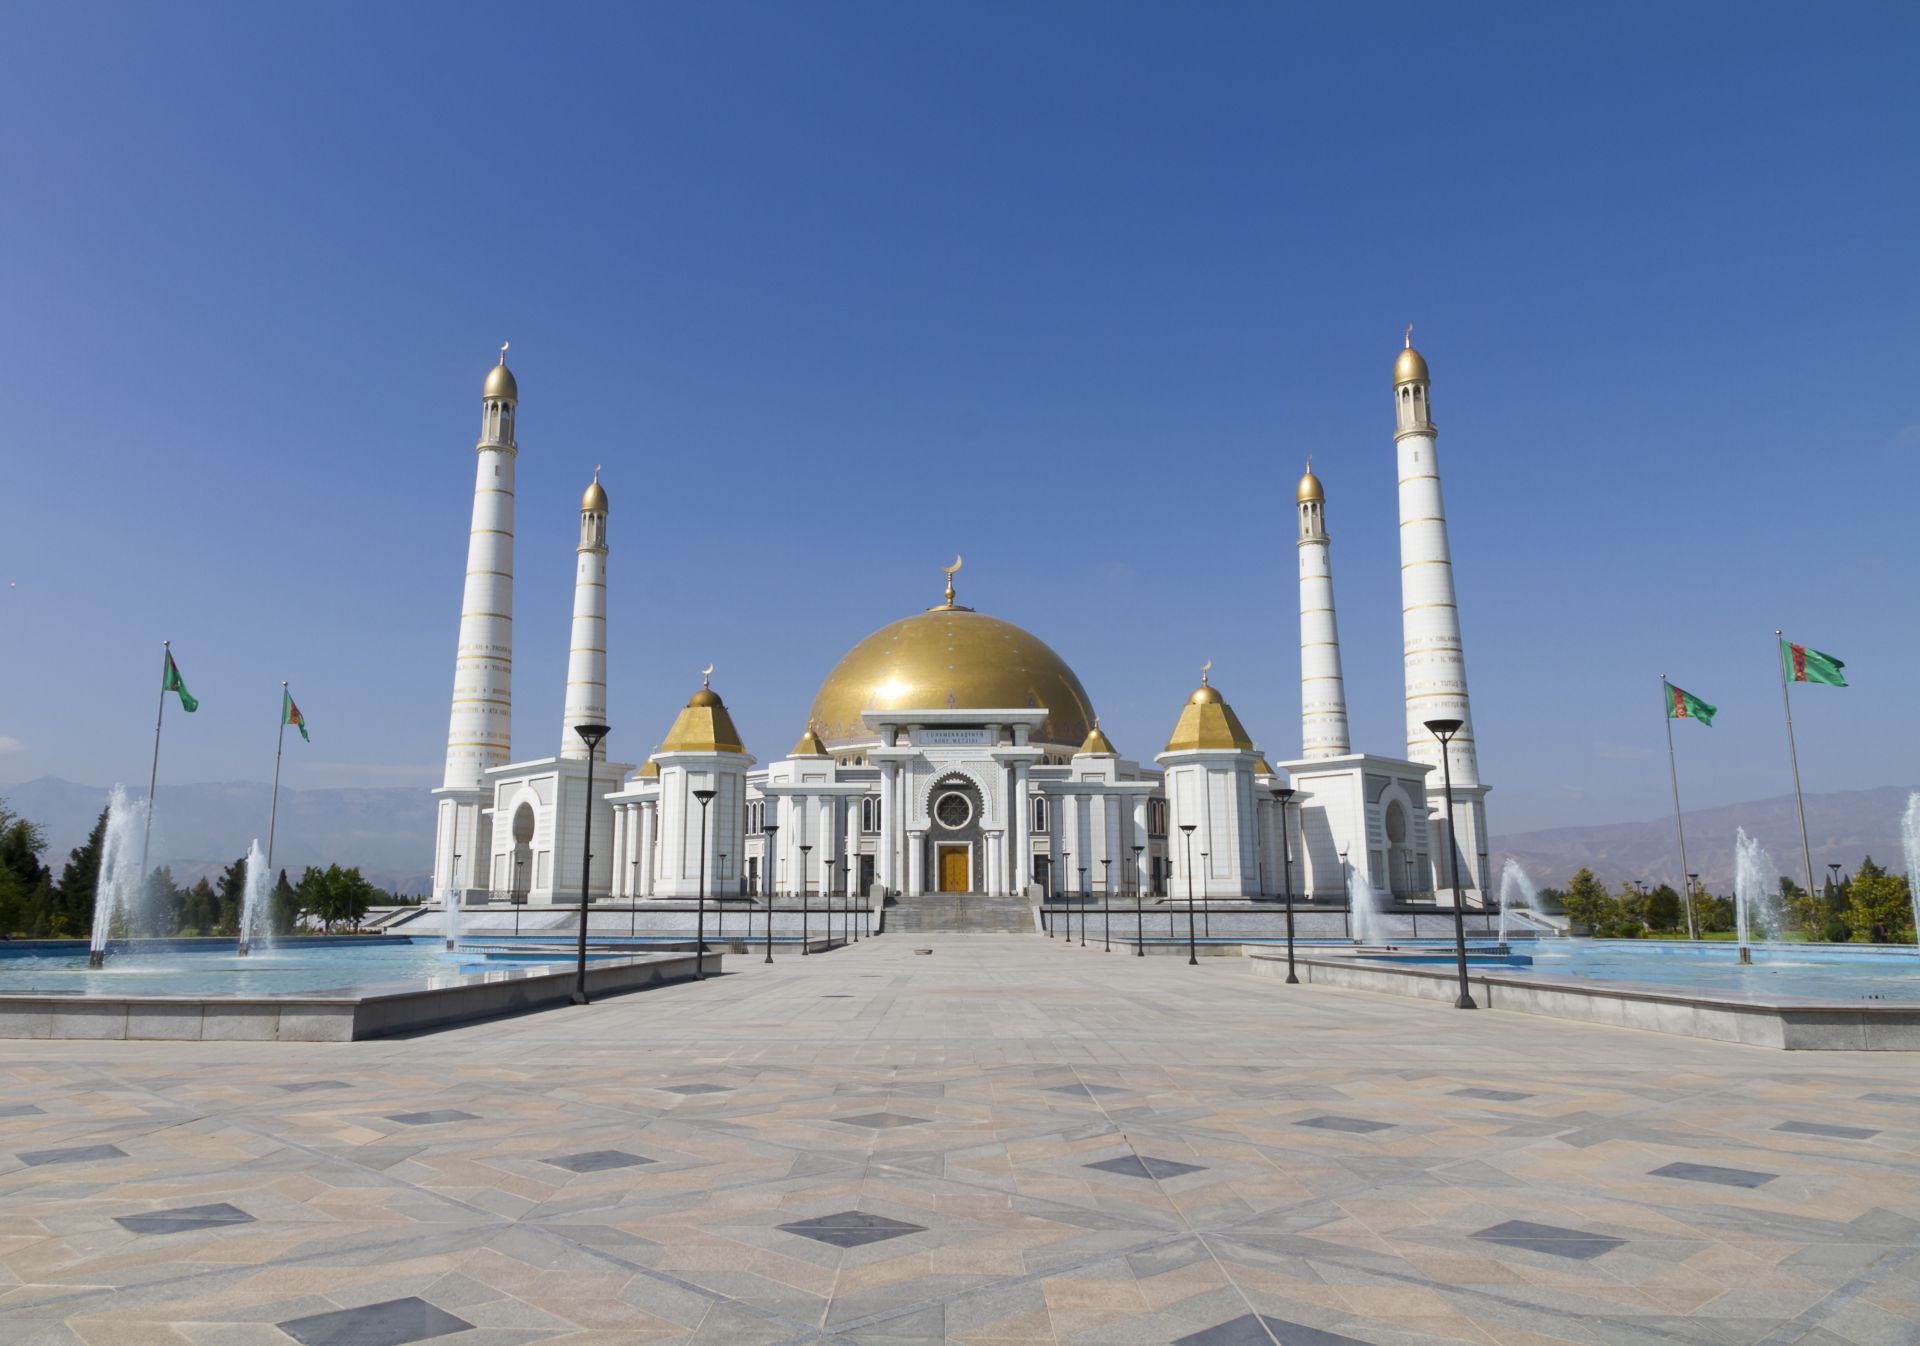 Vue de la grande mosquée, Ashgabat, Turkménistan